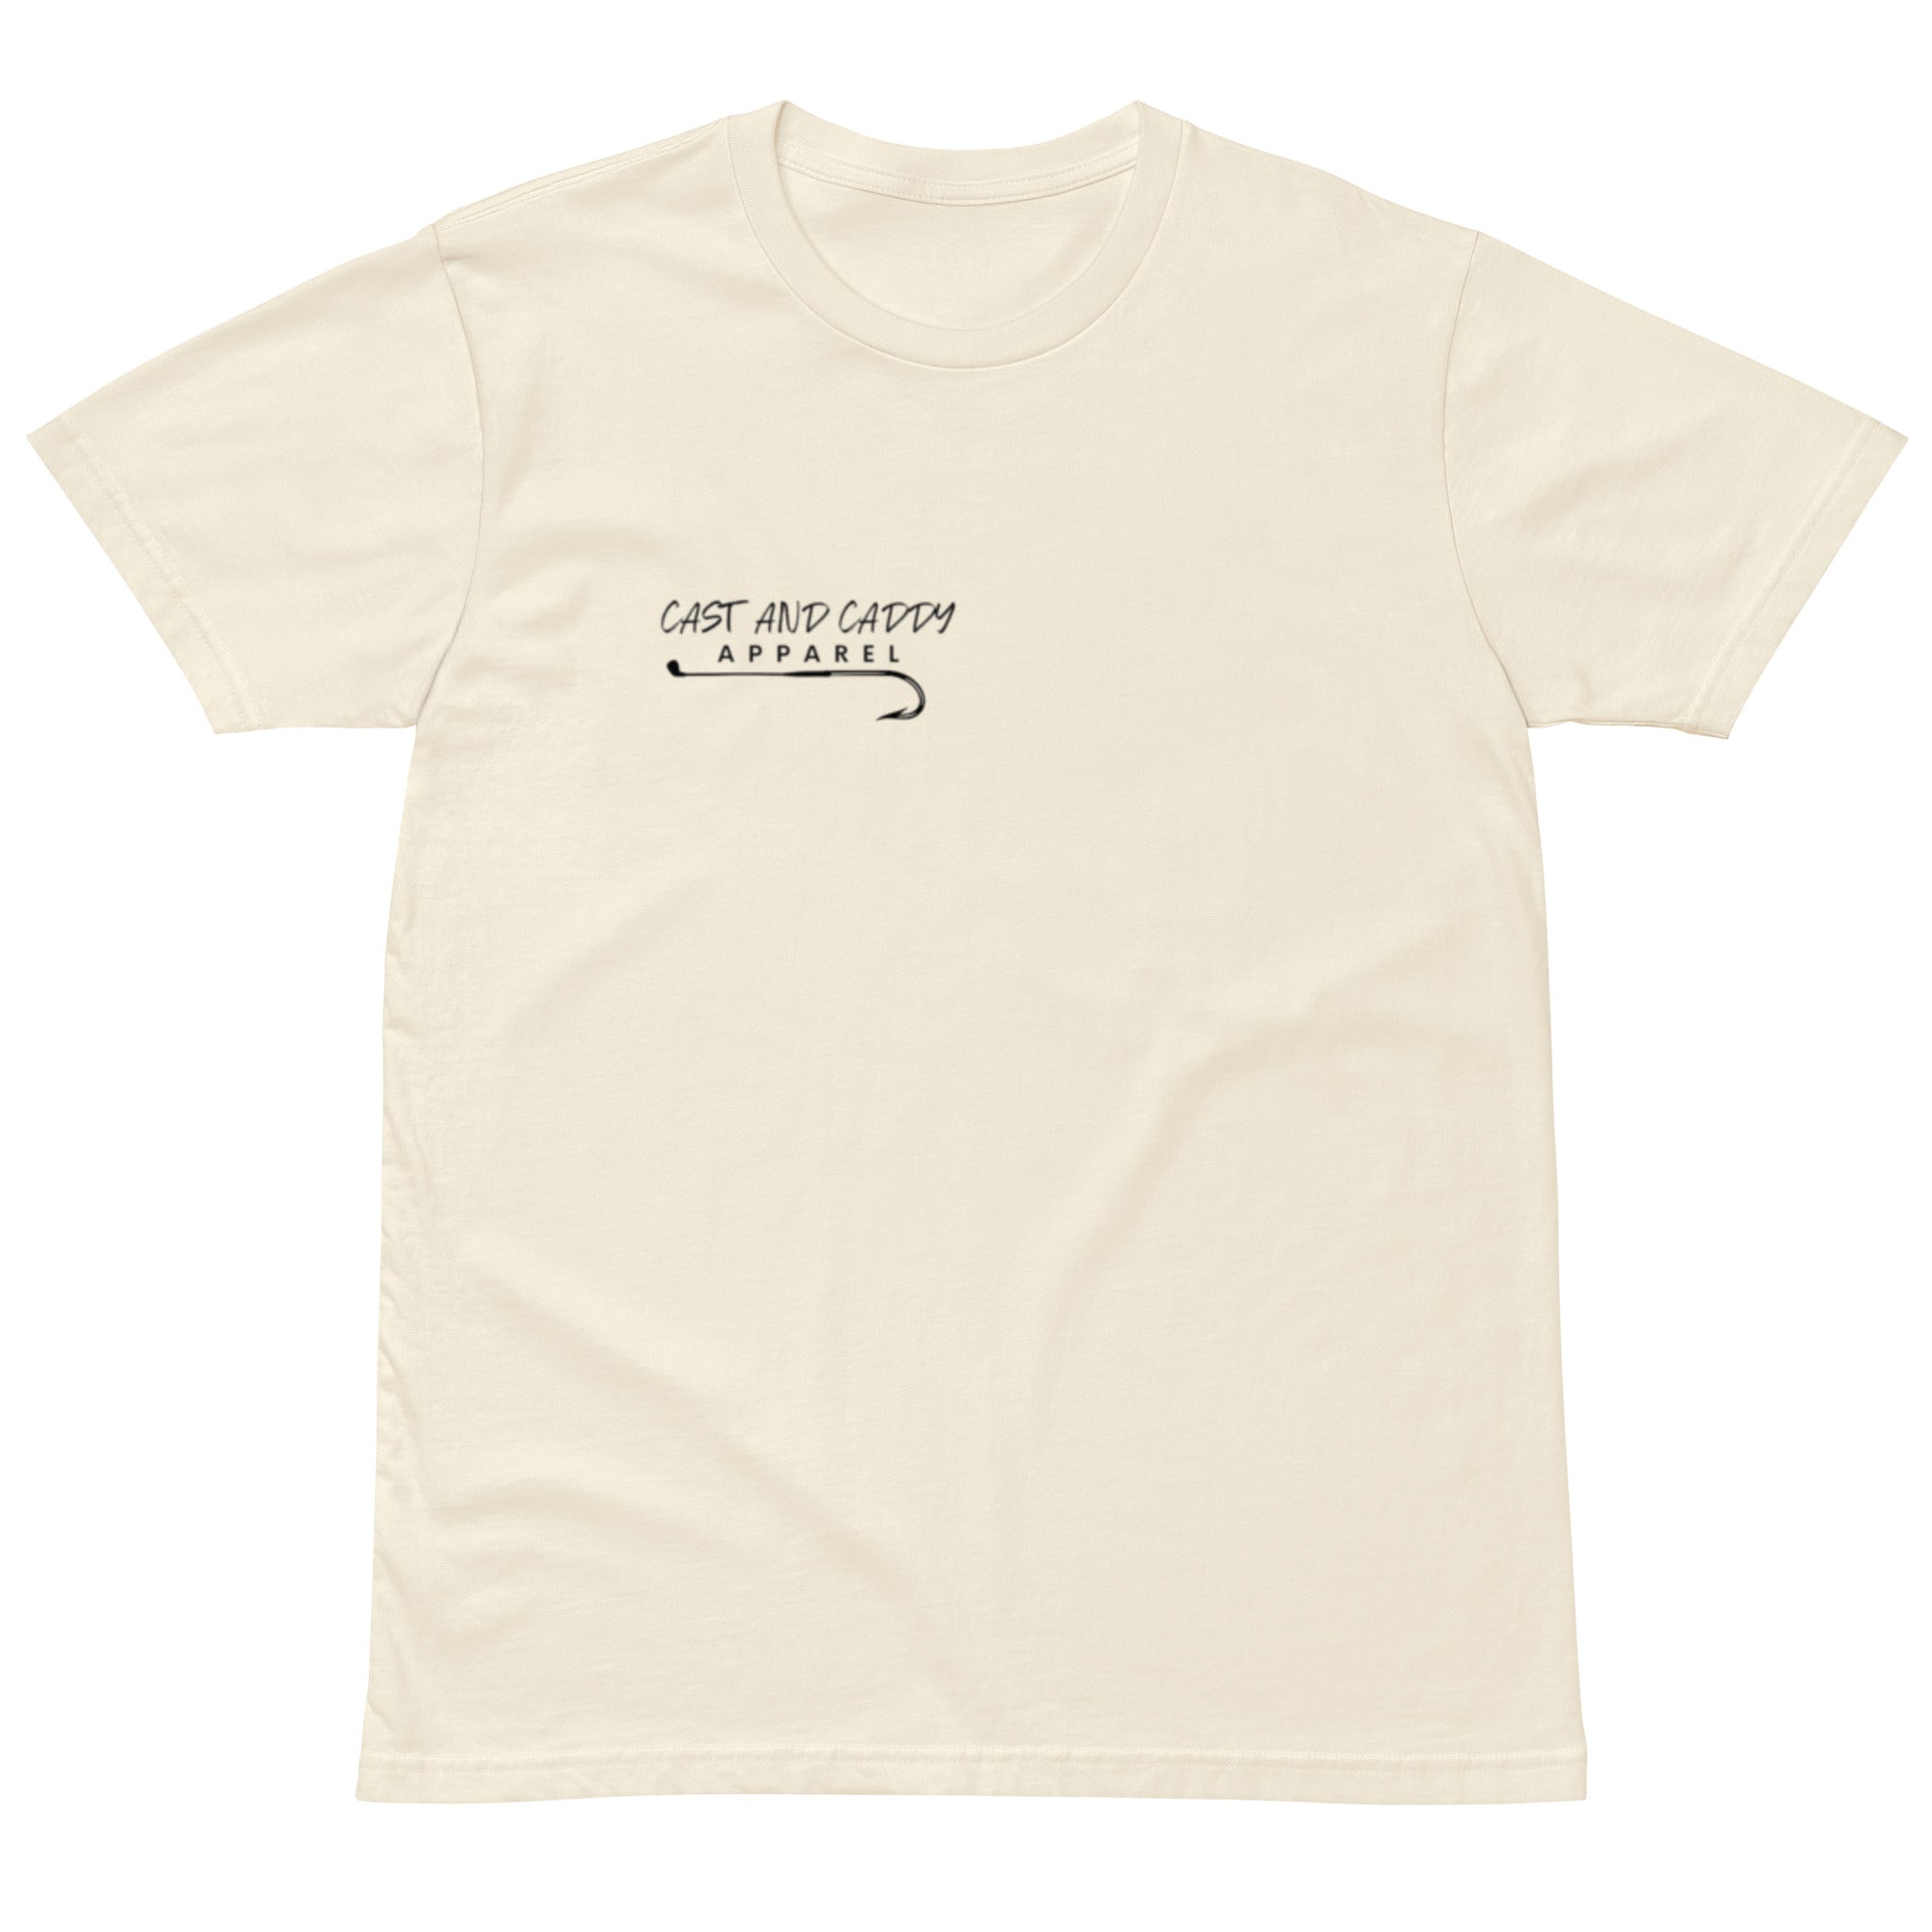 Men's Premium T-Shirt